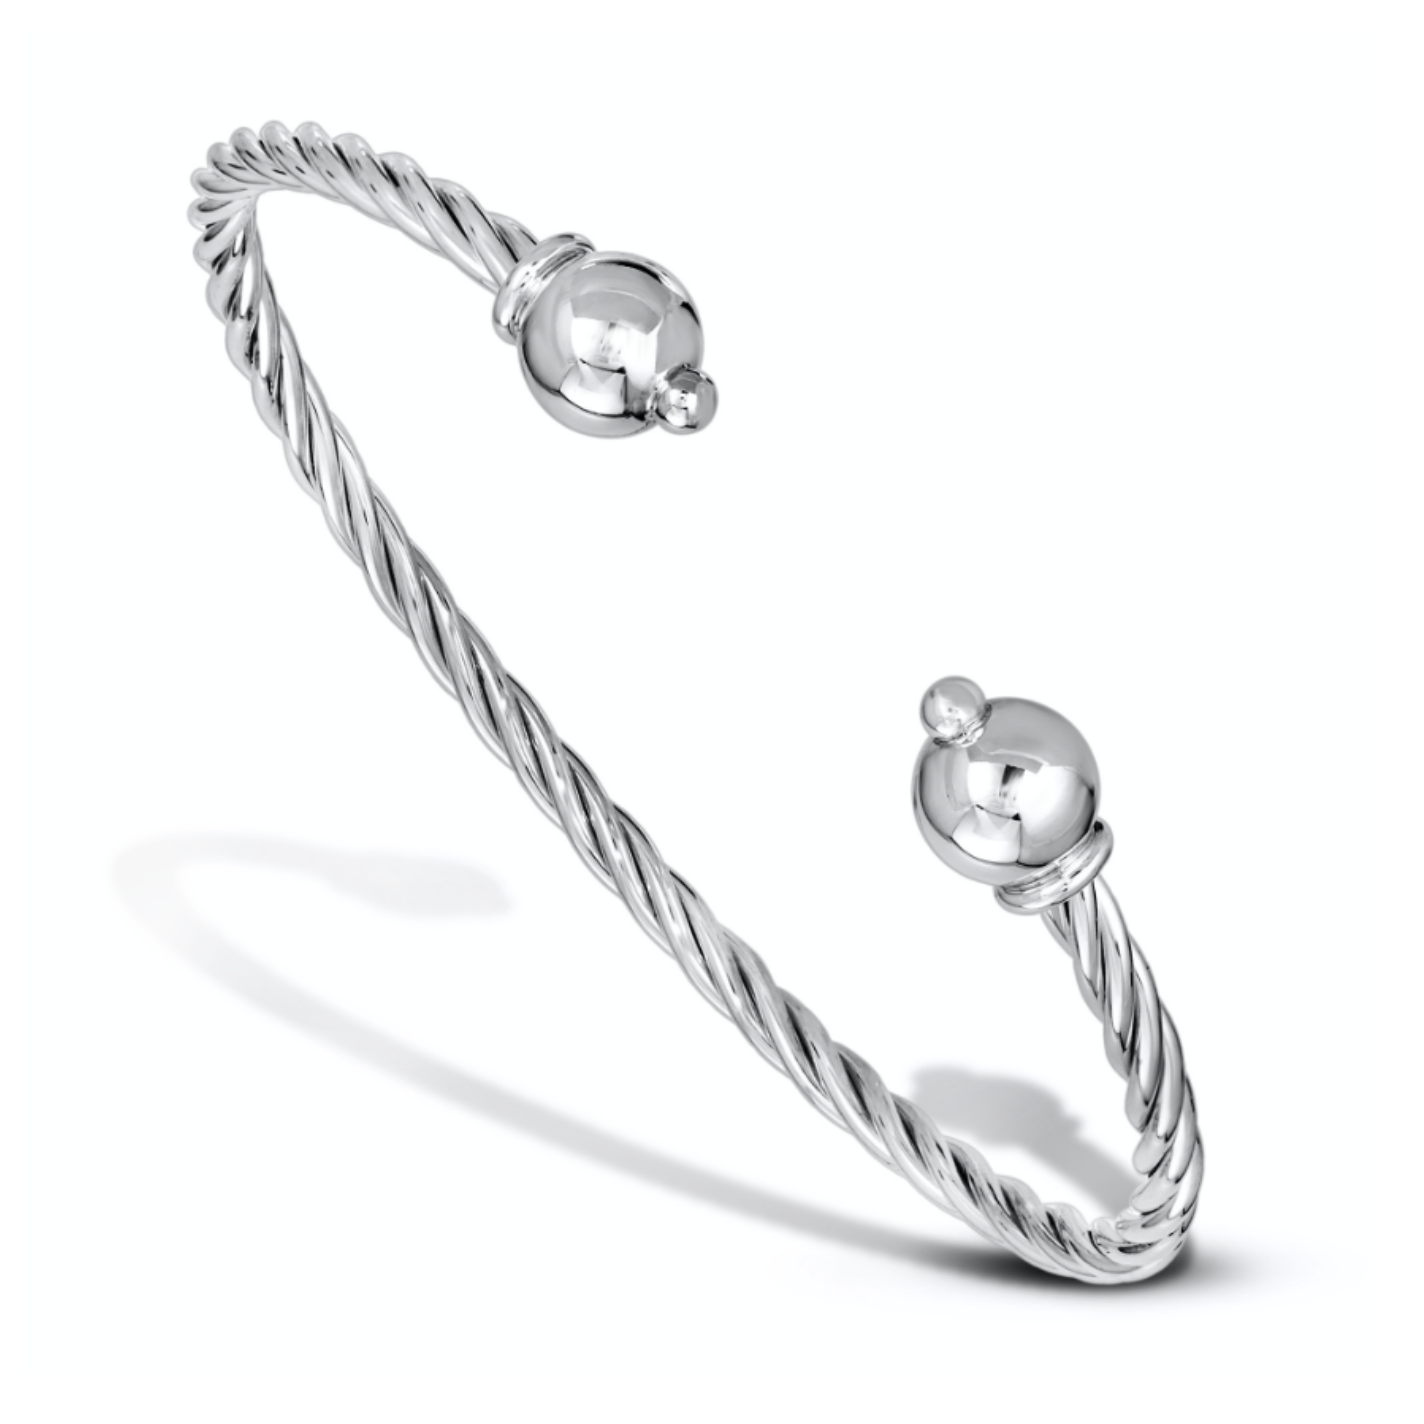 Cape Cod Twist Cuff Bracelet – Cape Cod Jewelers